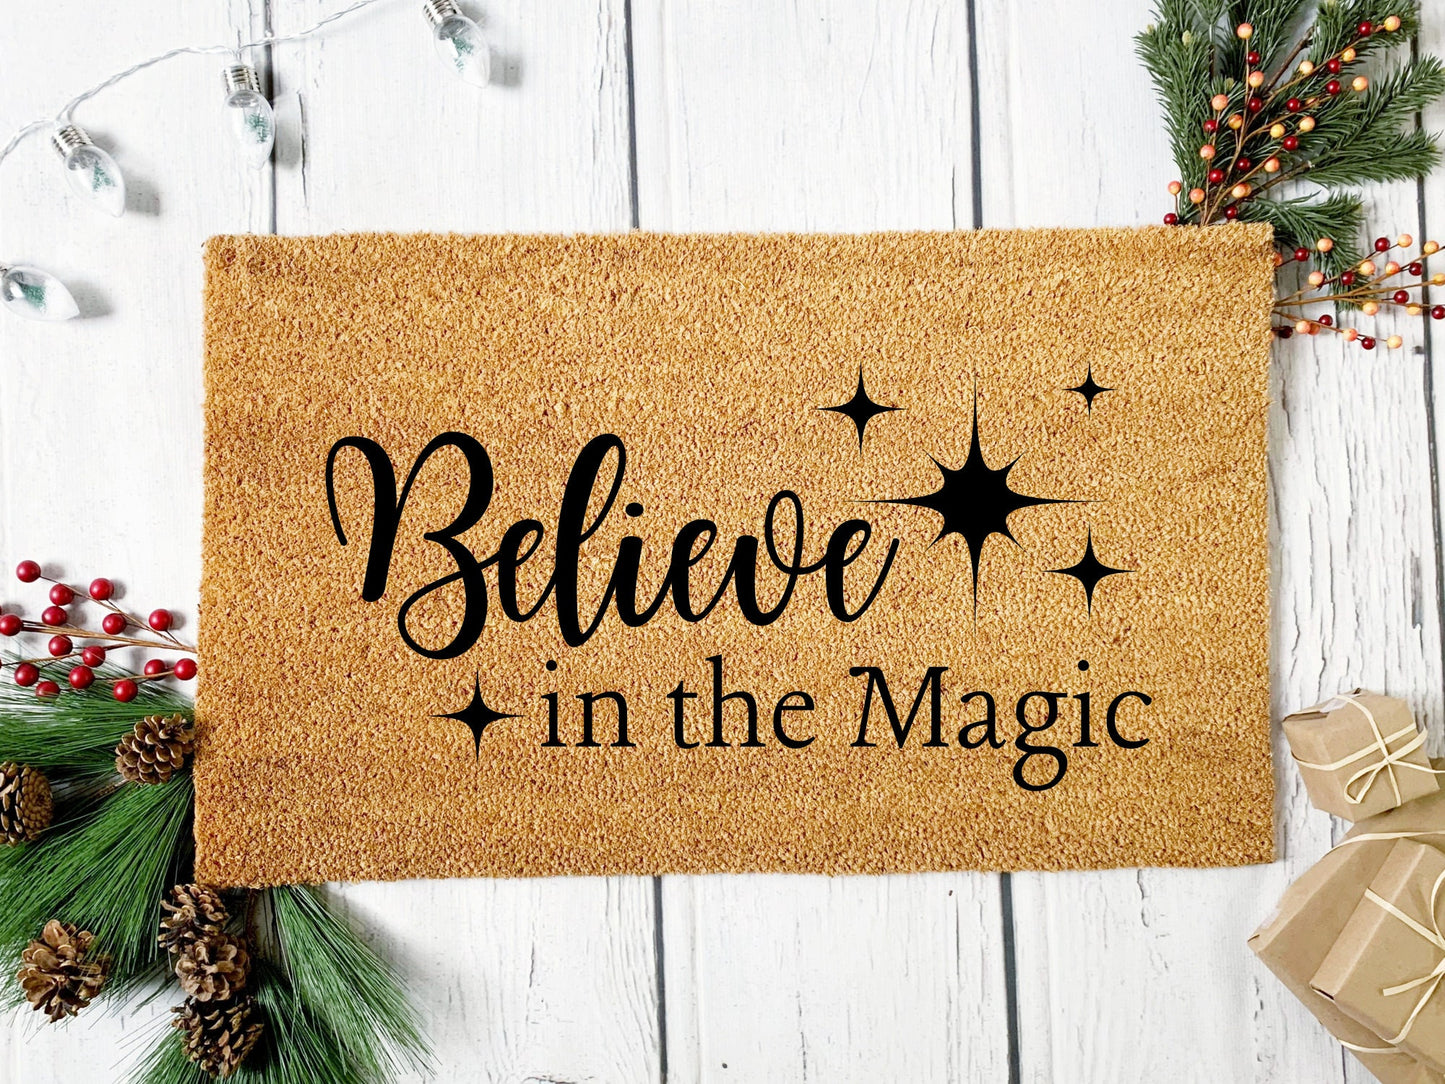 Believe in the Magic Doormat | Custom Painted Doormat | Housewarming Gift | Closing Gift | Welcome Doormat | Front Door Mat | Home Decor